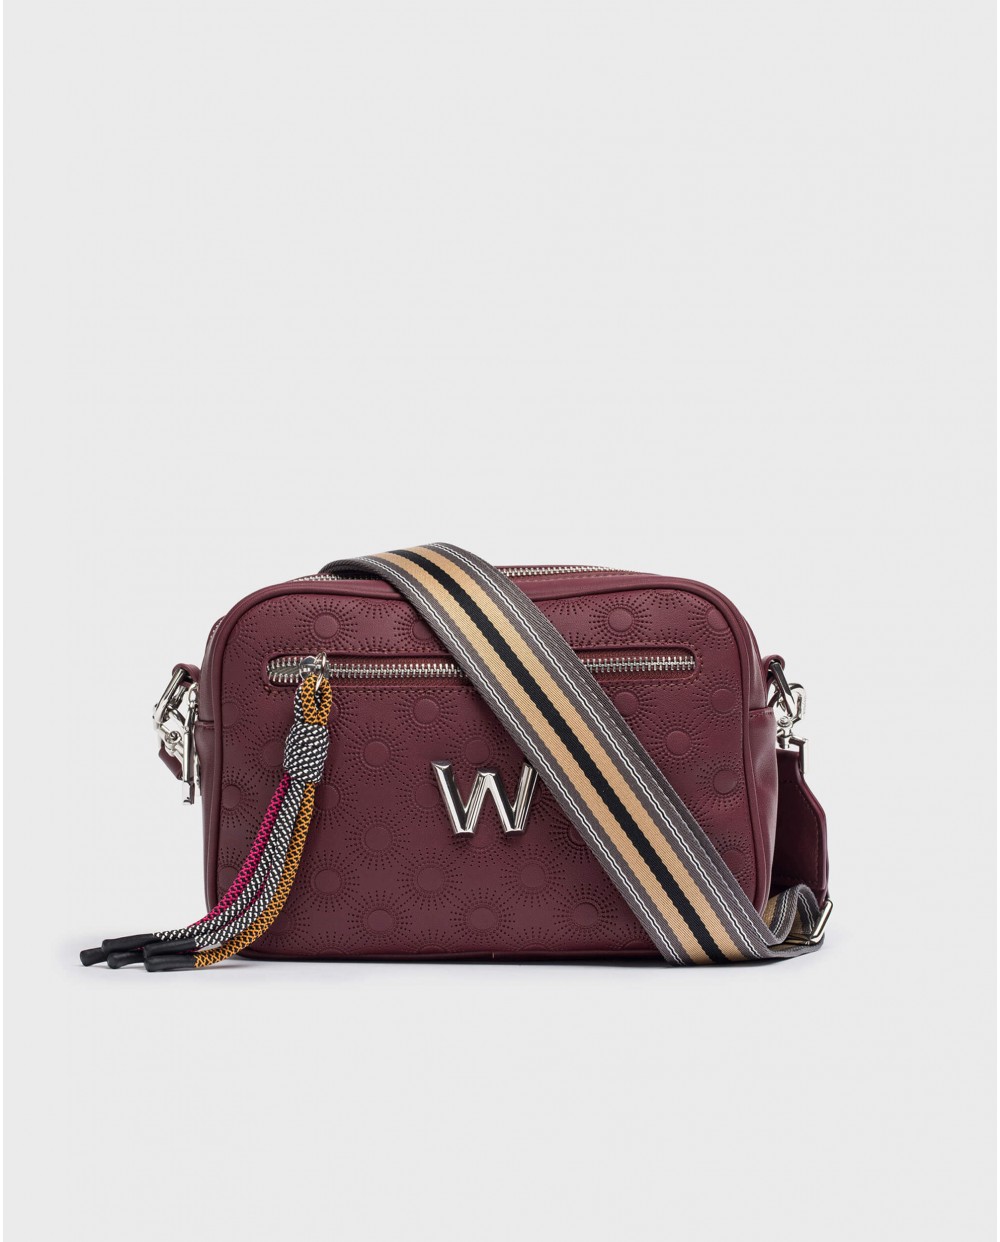 Wonders-Bags-Burgundy JADE Bag